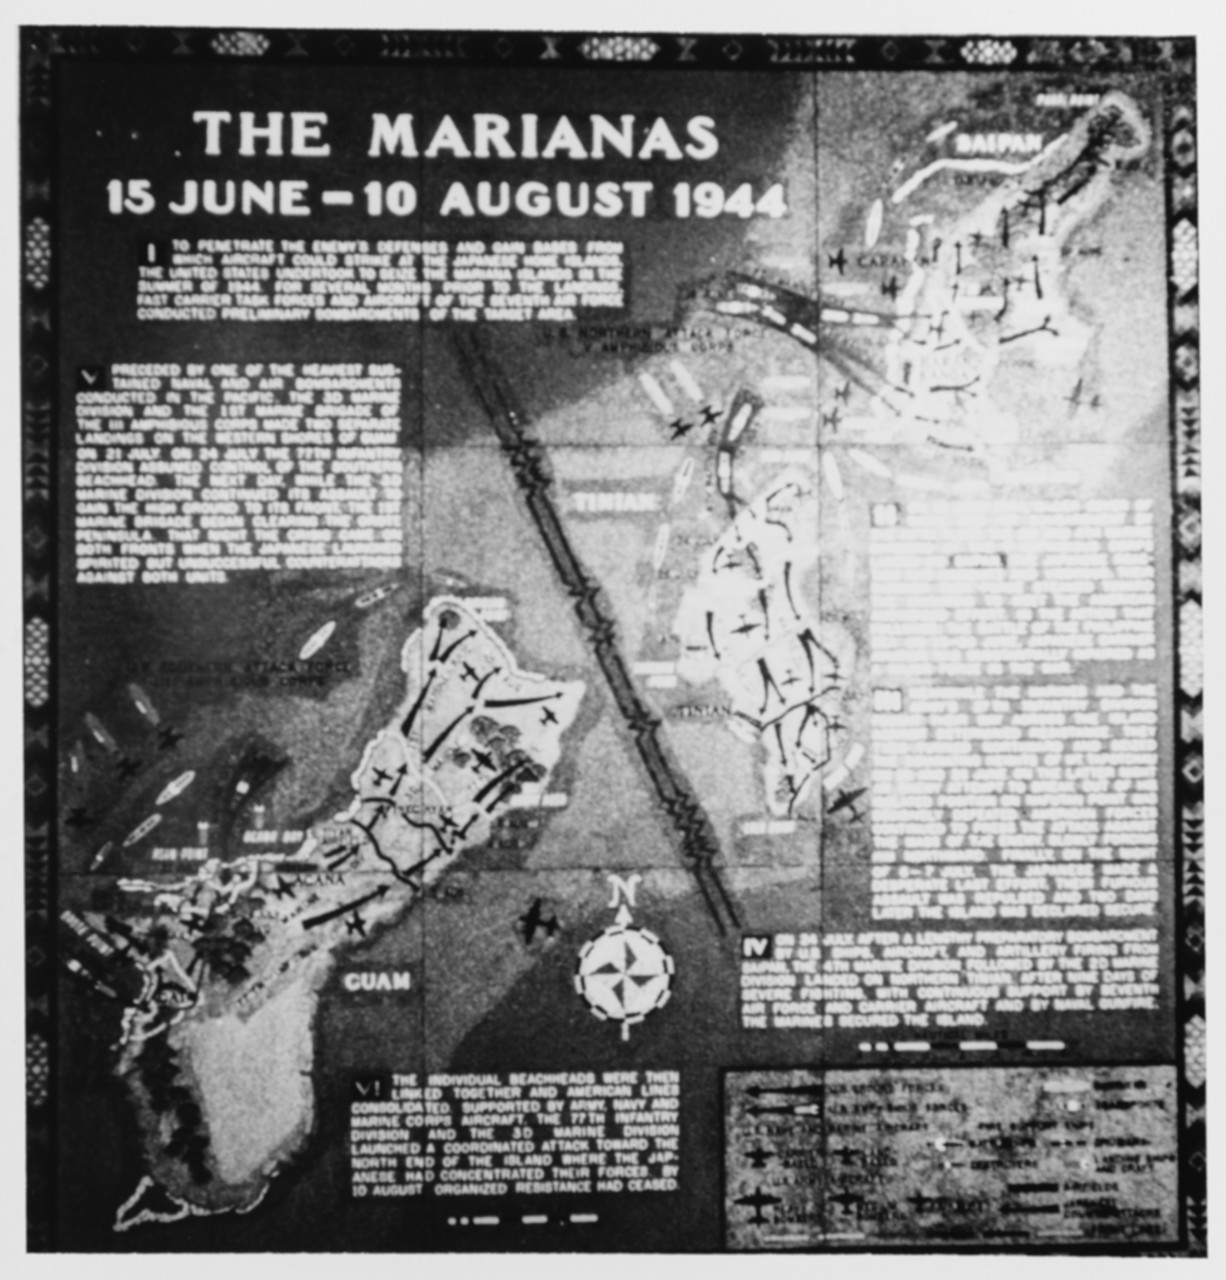 The Marianas 15 June - 10 August 1944 -- World War II Battle Chart